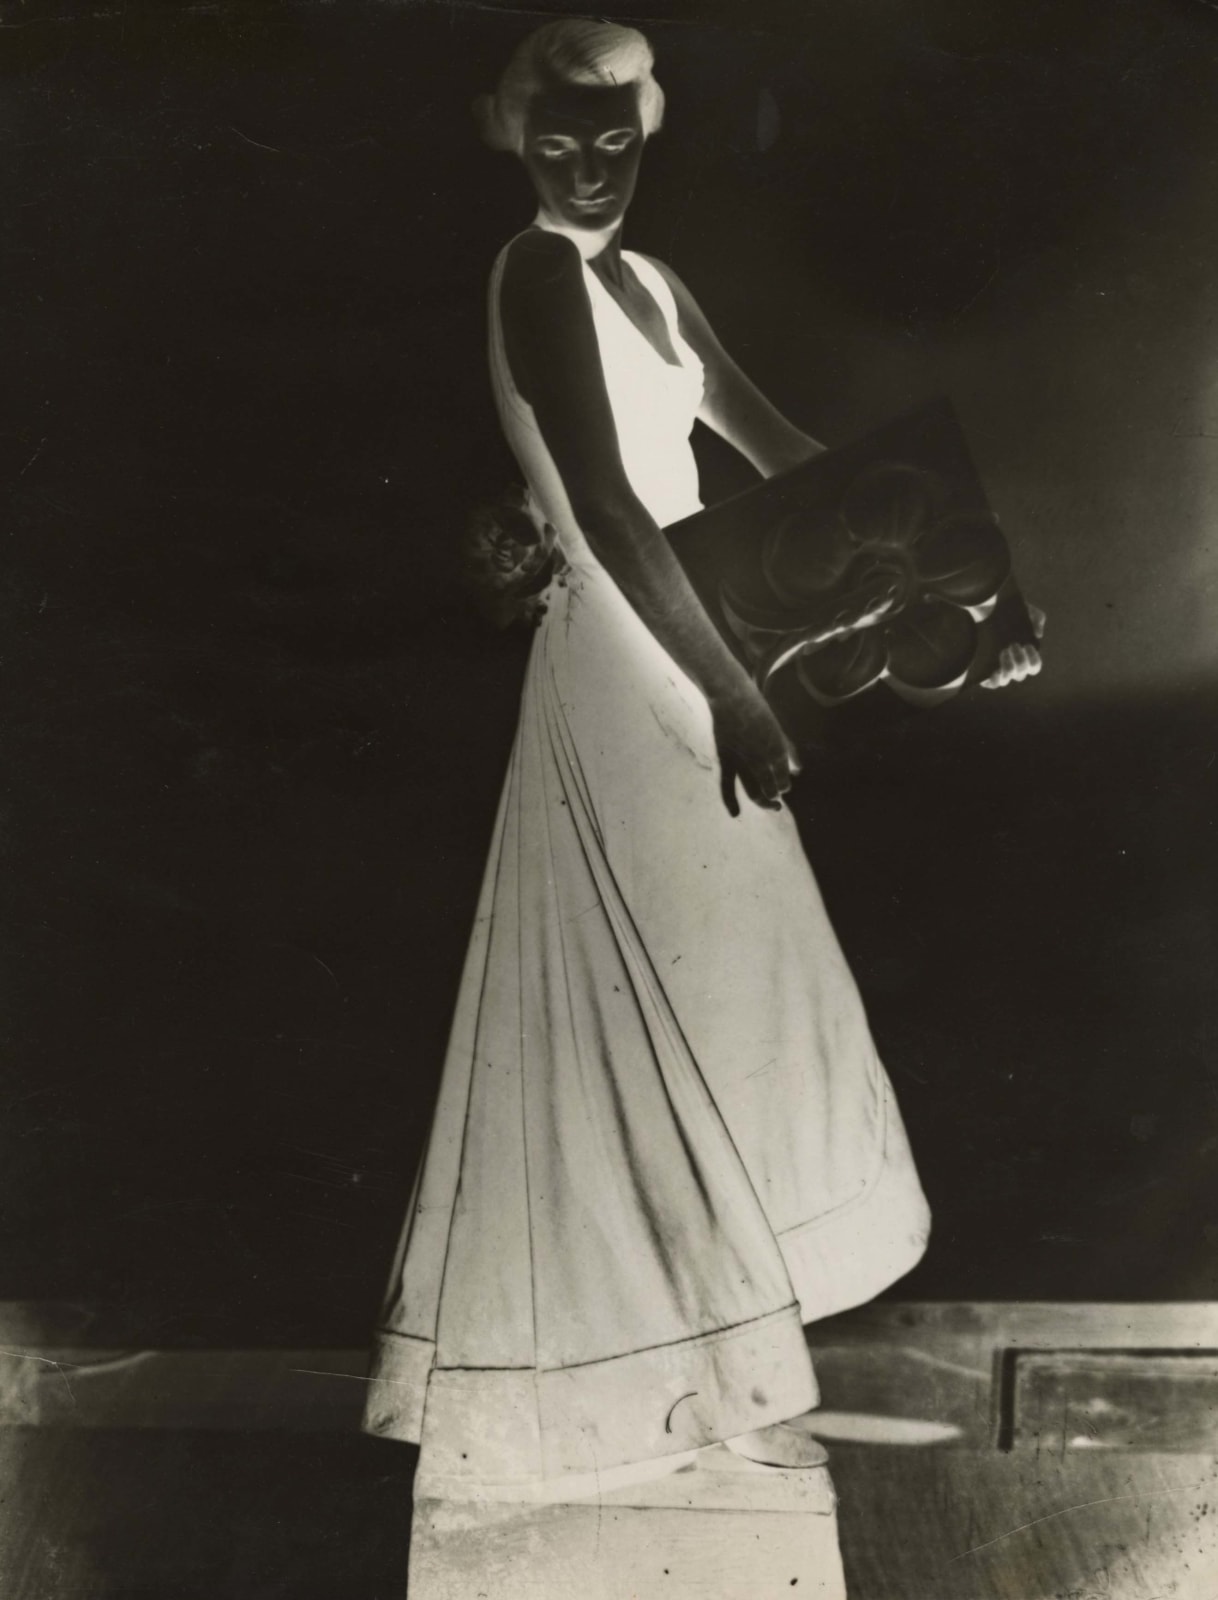 Dora Maar, Photo Mode II, 1931-36